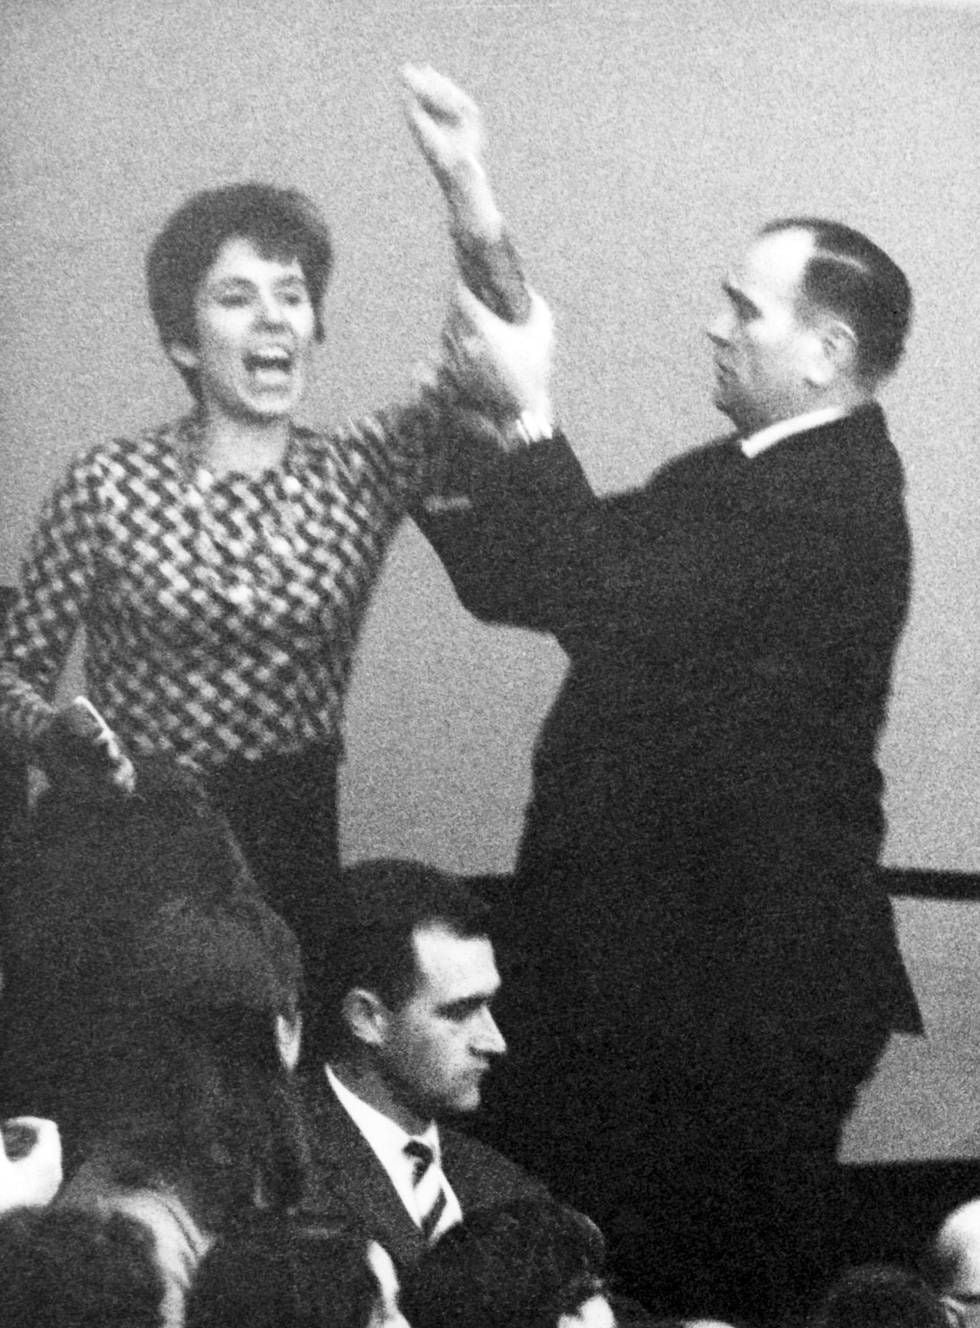 A jovem Beate é contida após esbofetear o ex-dirigente nazista e chanceler alemão Kurt Georg Kiesinger em Berlim, em 1968.